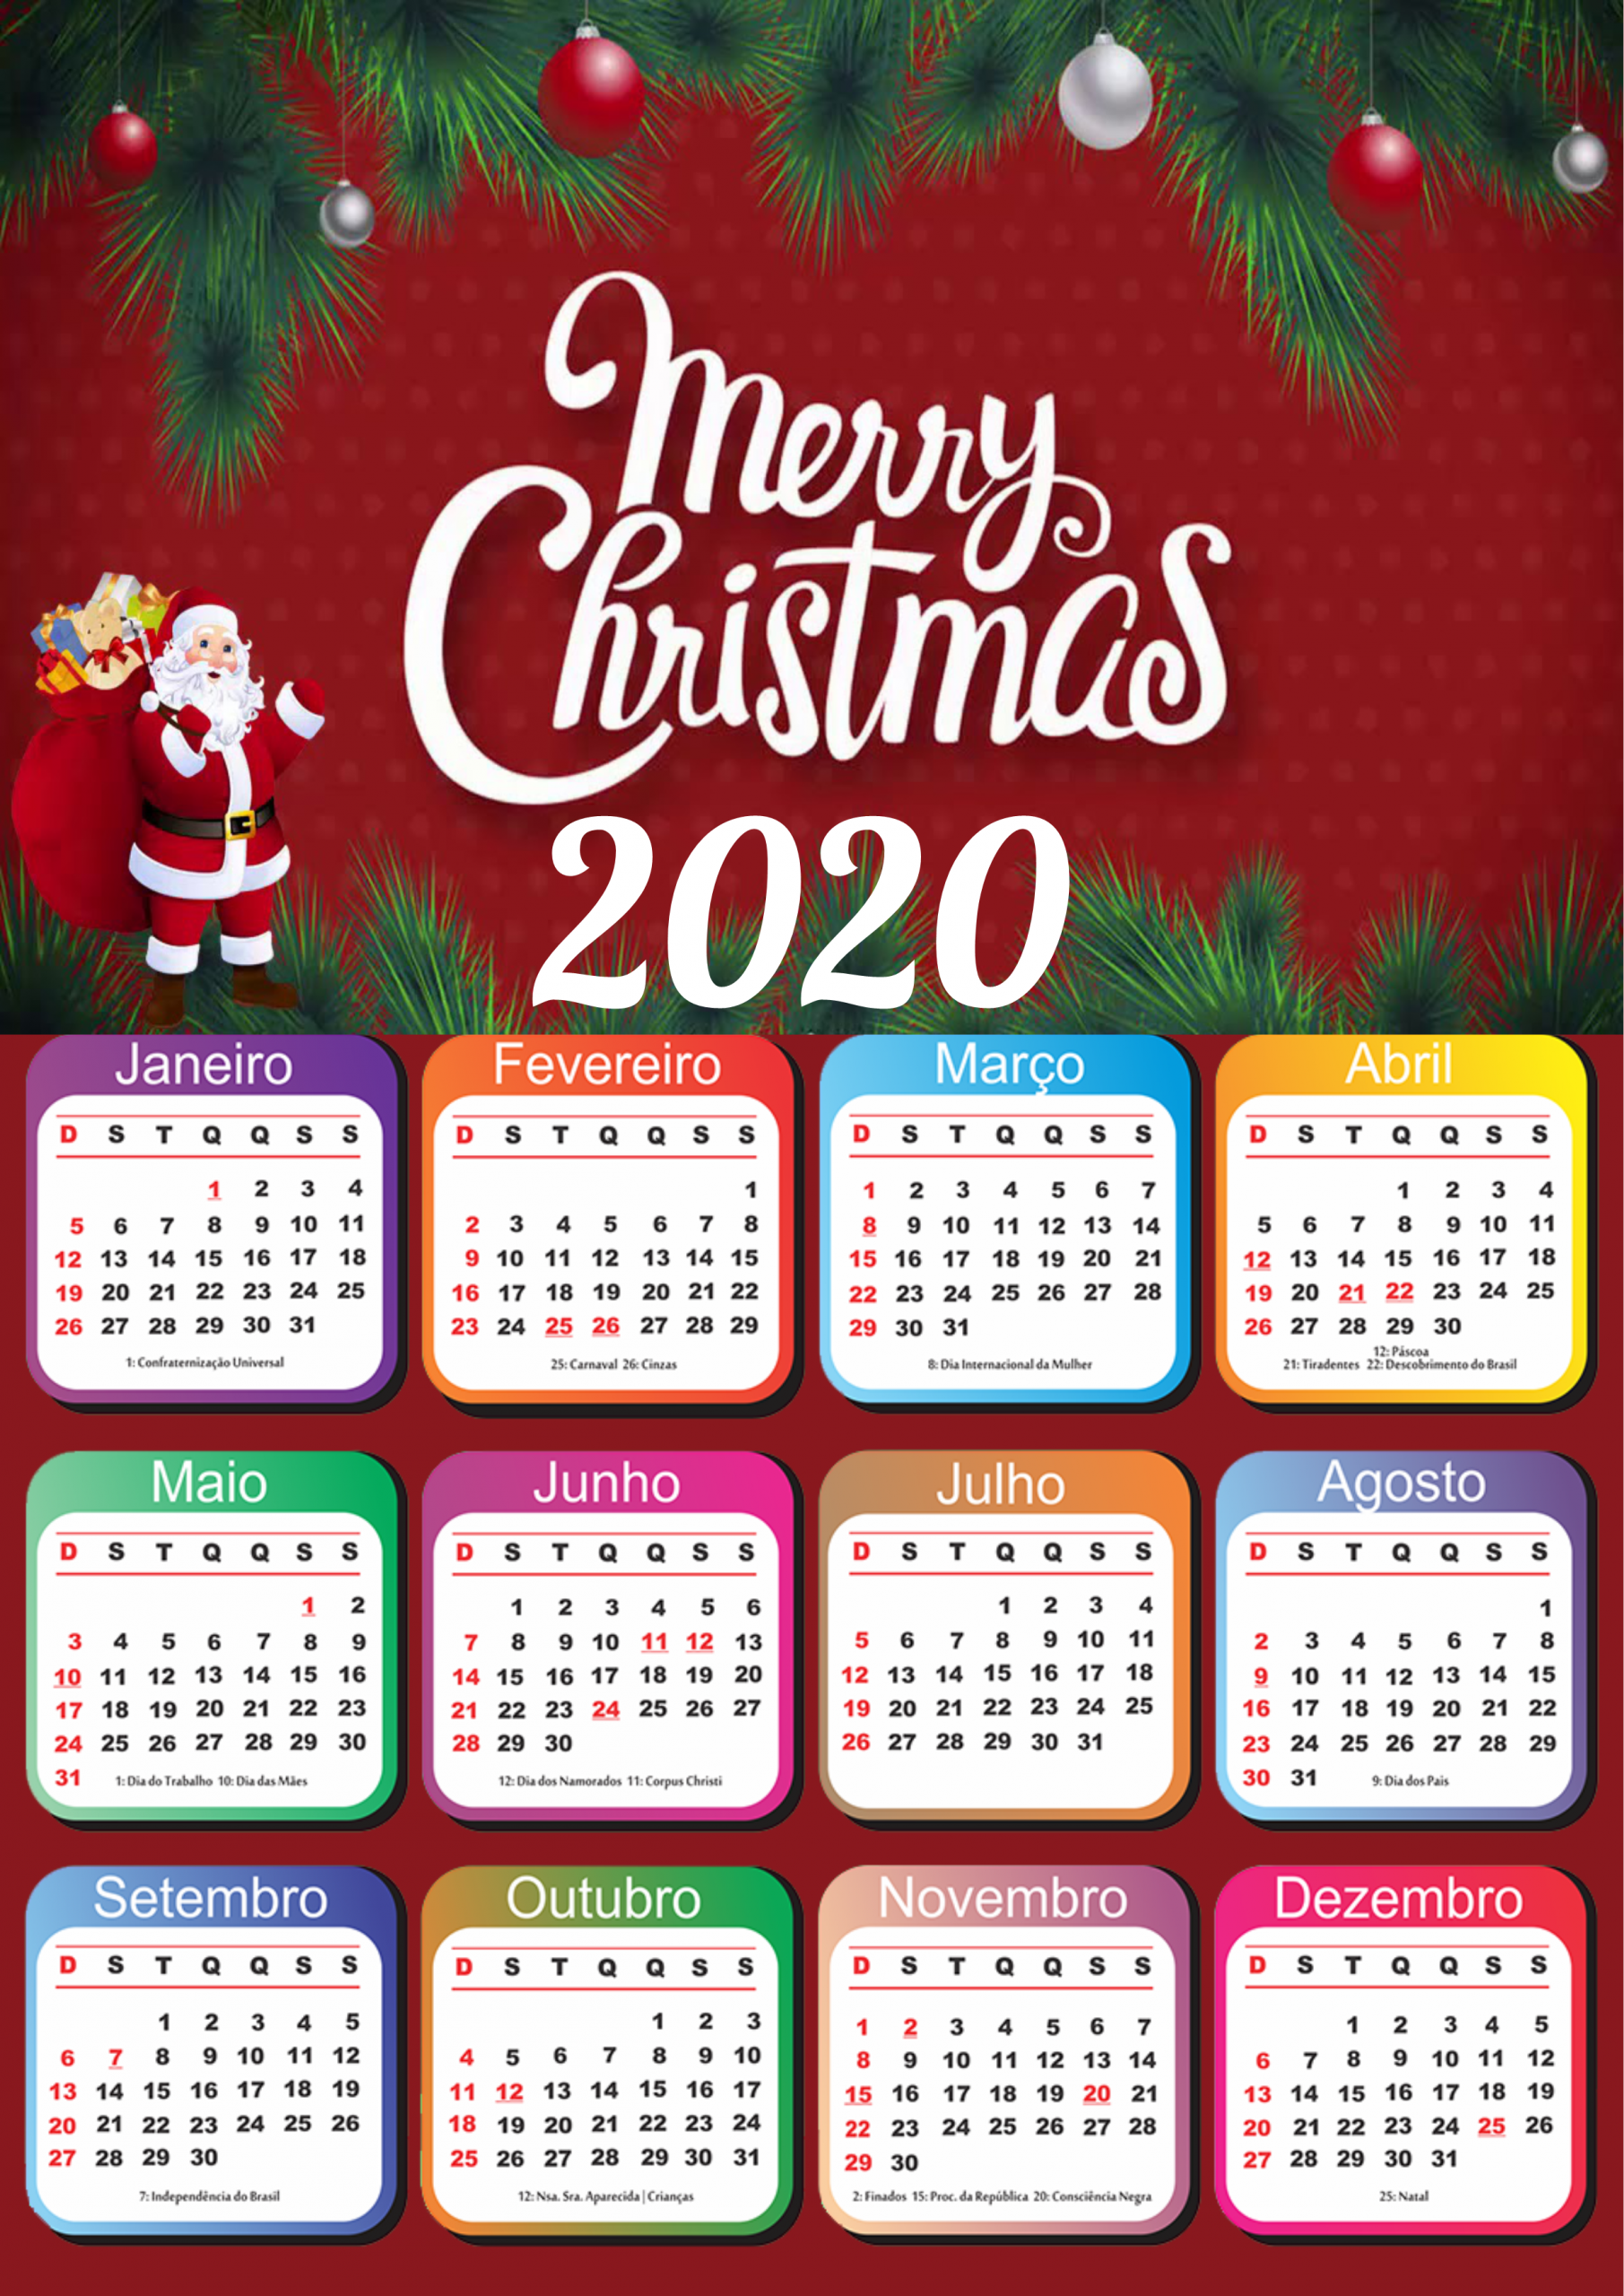 Merry Christmas calendário 2020 png